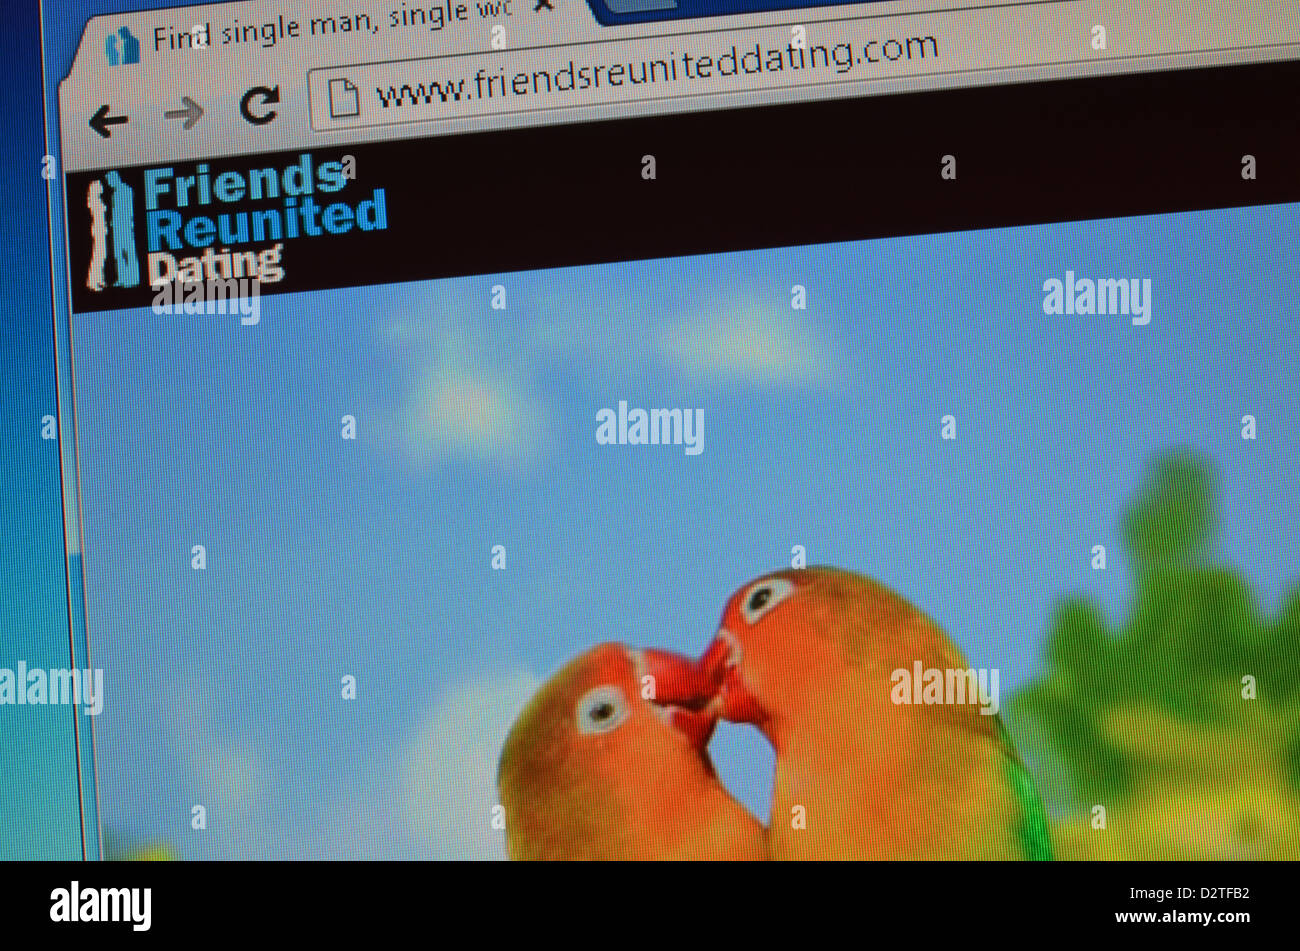 Friends reunited dating website screenshot Stock Photo